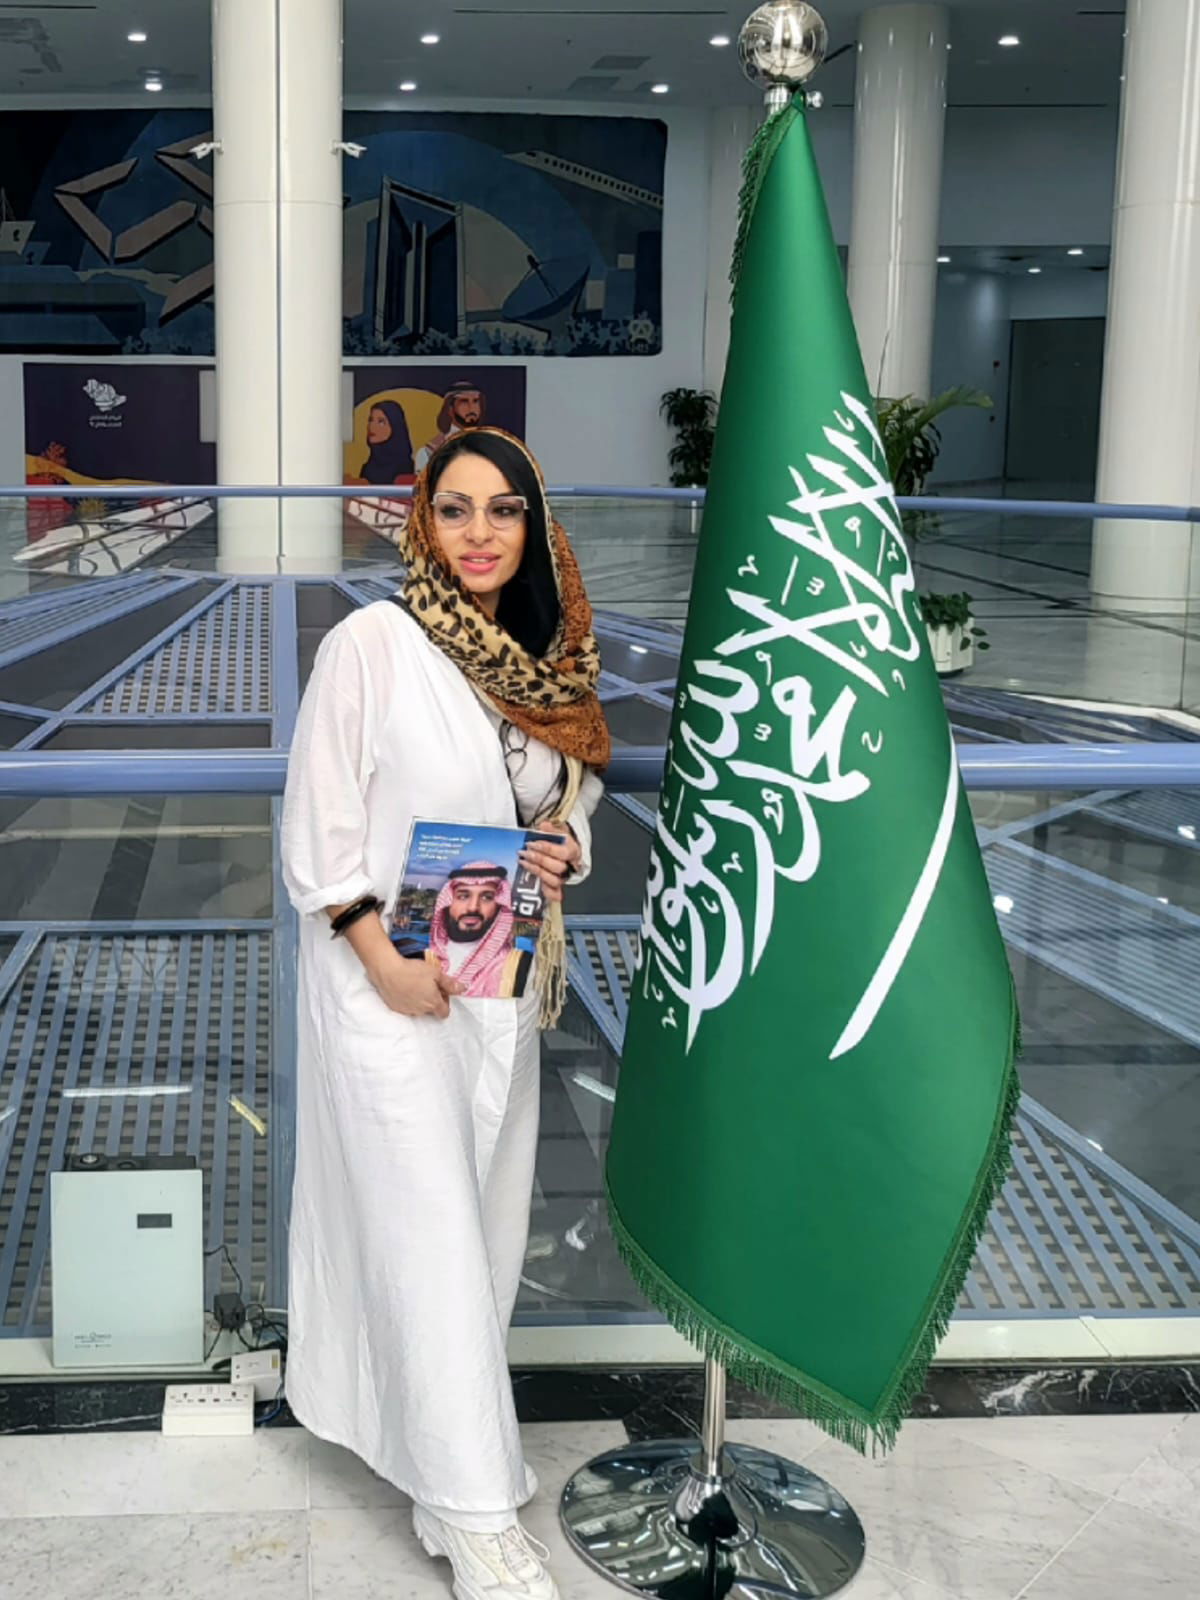 فعاليات زيارة مجموعة تايغر العالمية للمملكة العربية السعودية  في اطار برنامجها الإقتصادي والتنموي